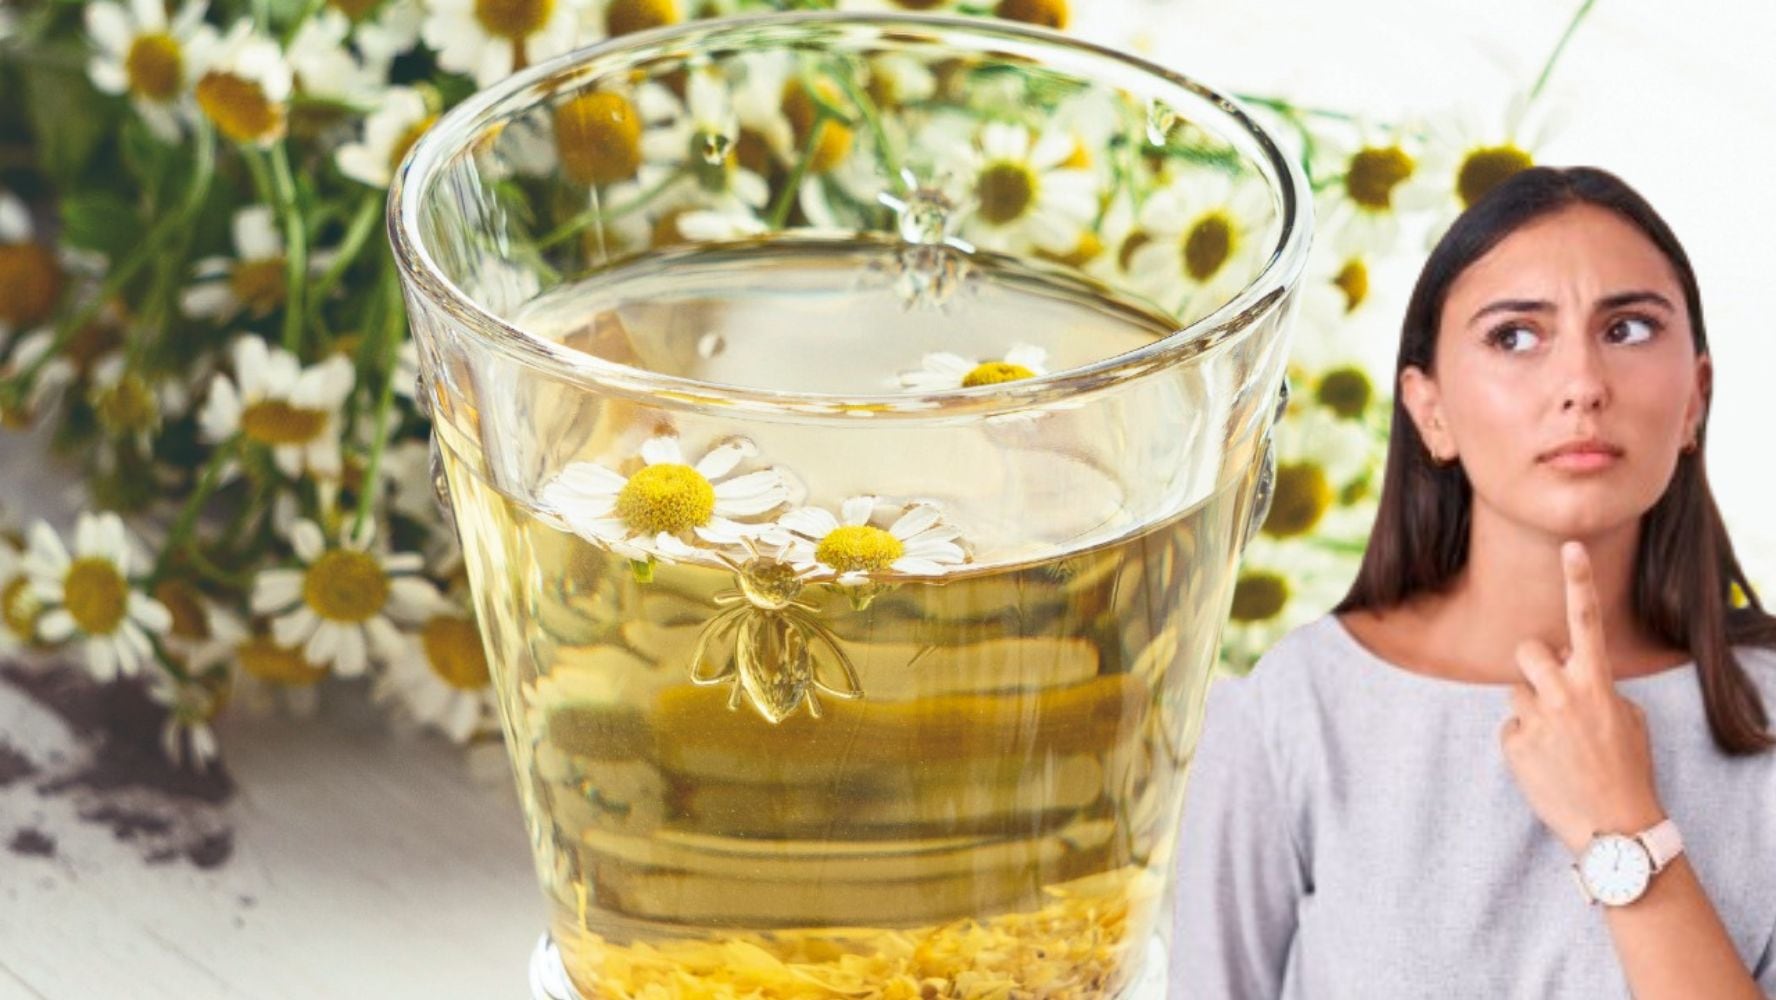 El té de manzanilla es uno de los remedios caseros más populares en México, y se puede usar en el cabello. (Foto: Especial)